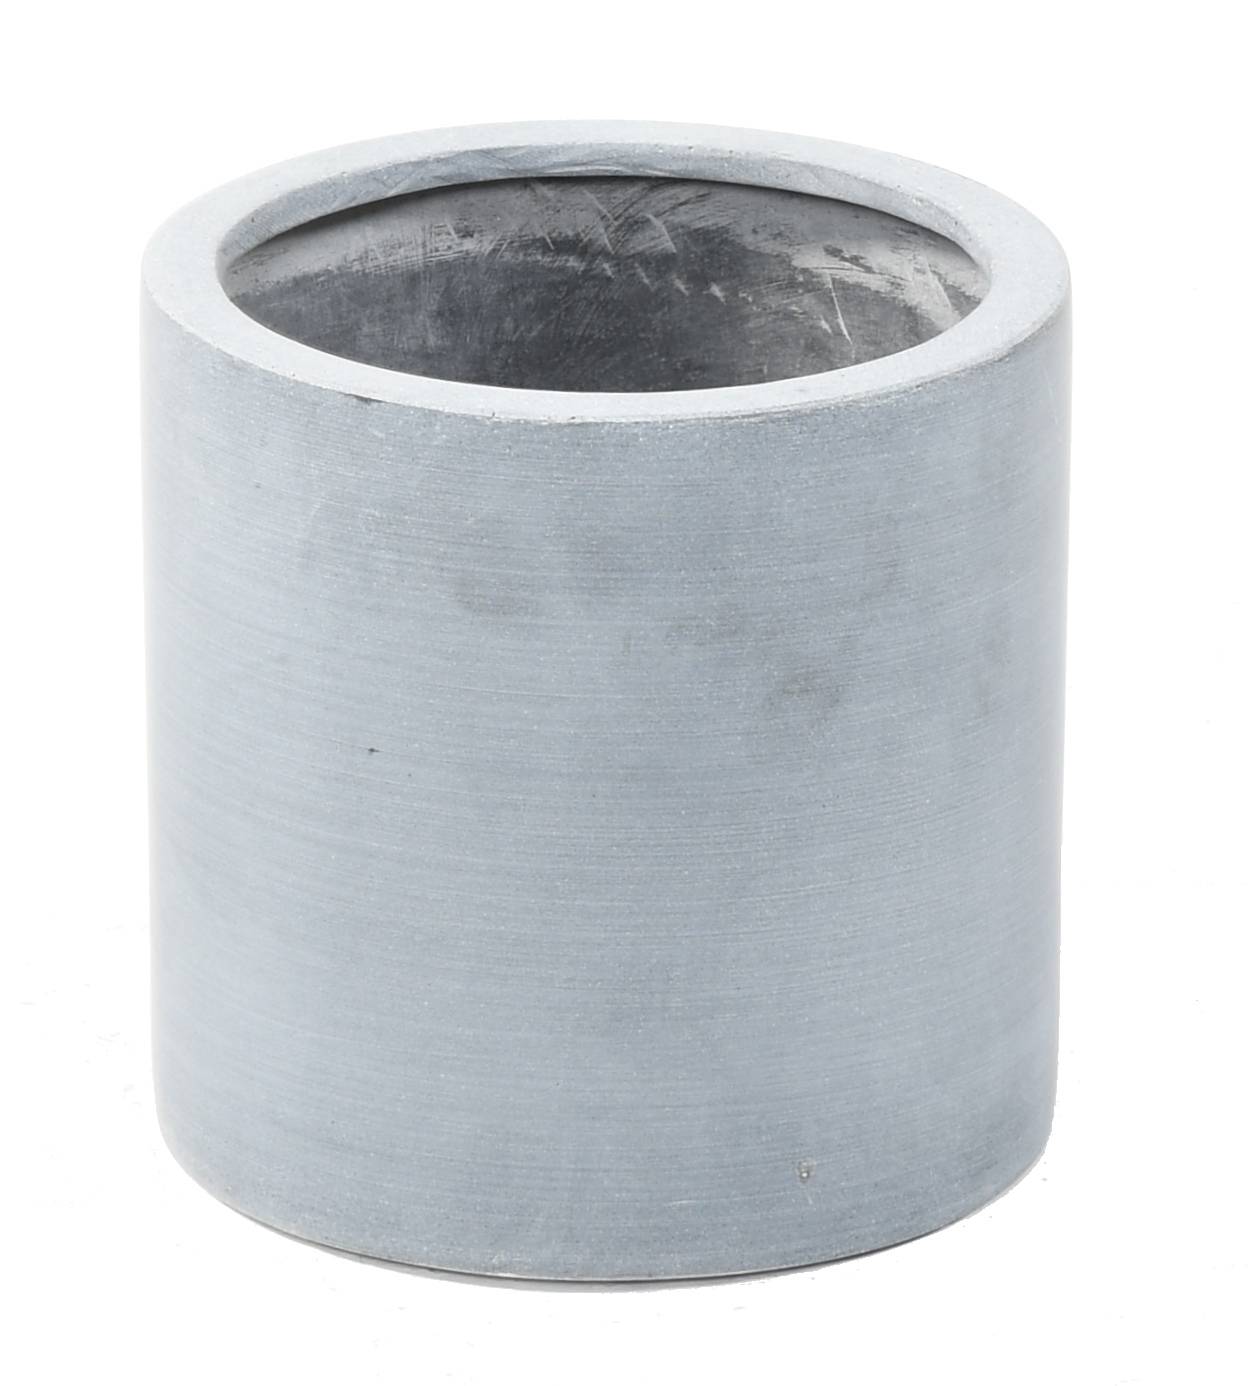 Pot cylindrique en Fiberstone gris de 20 cm